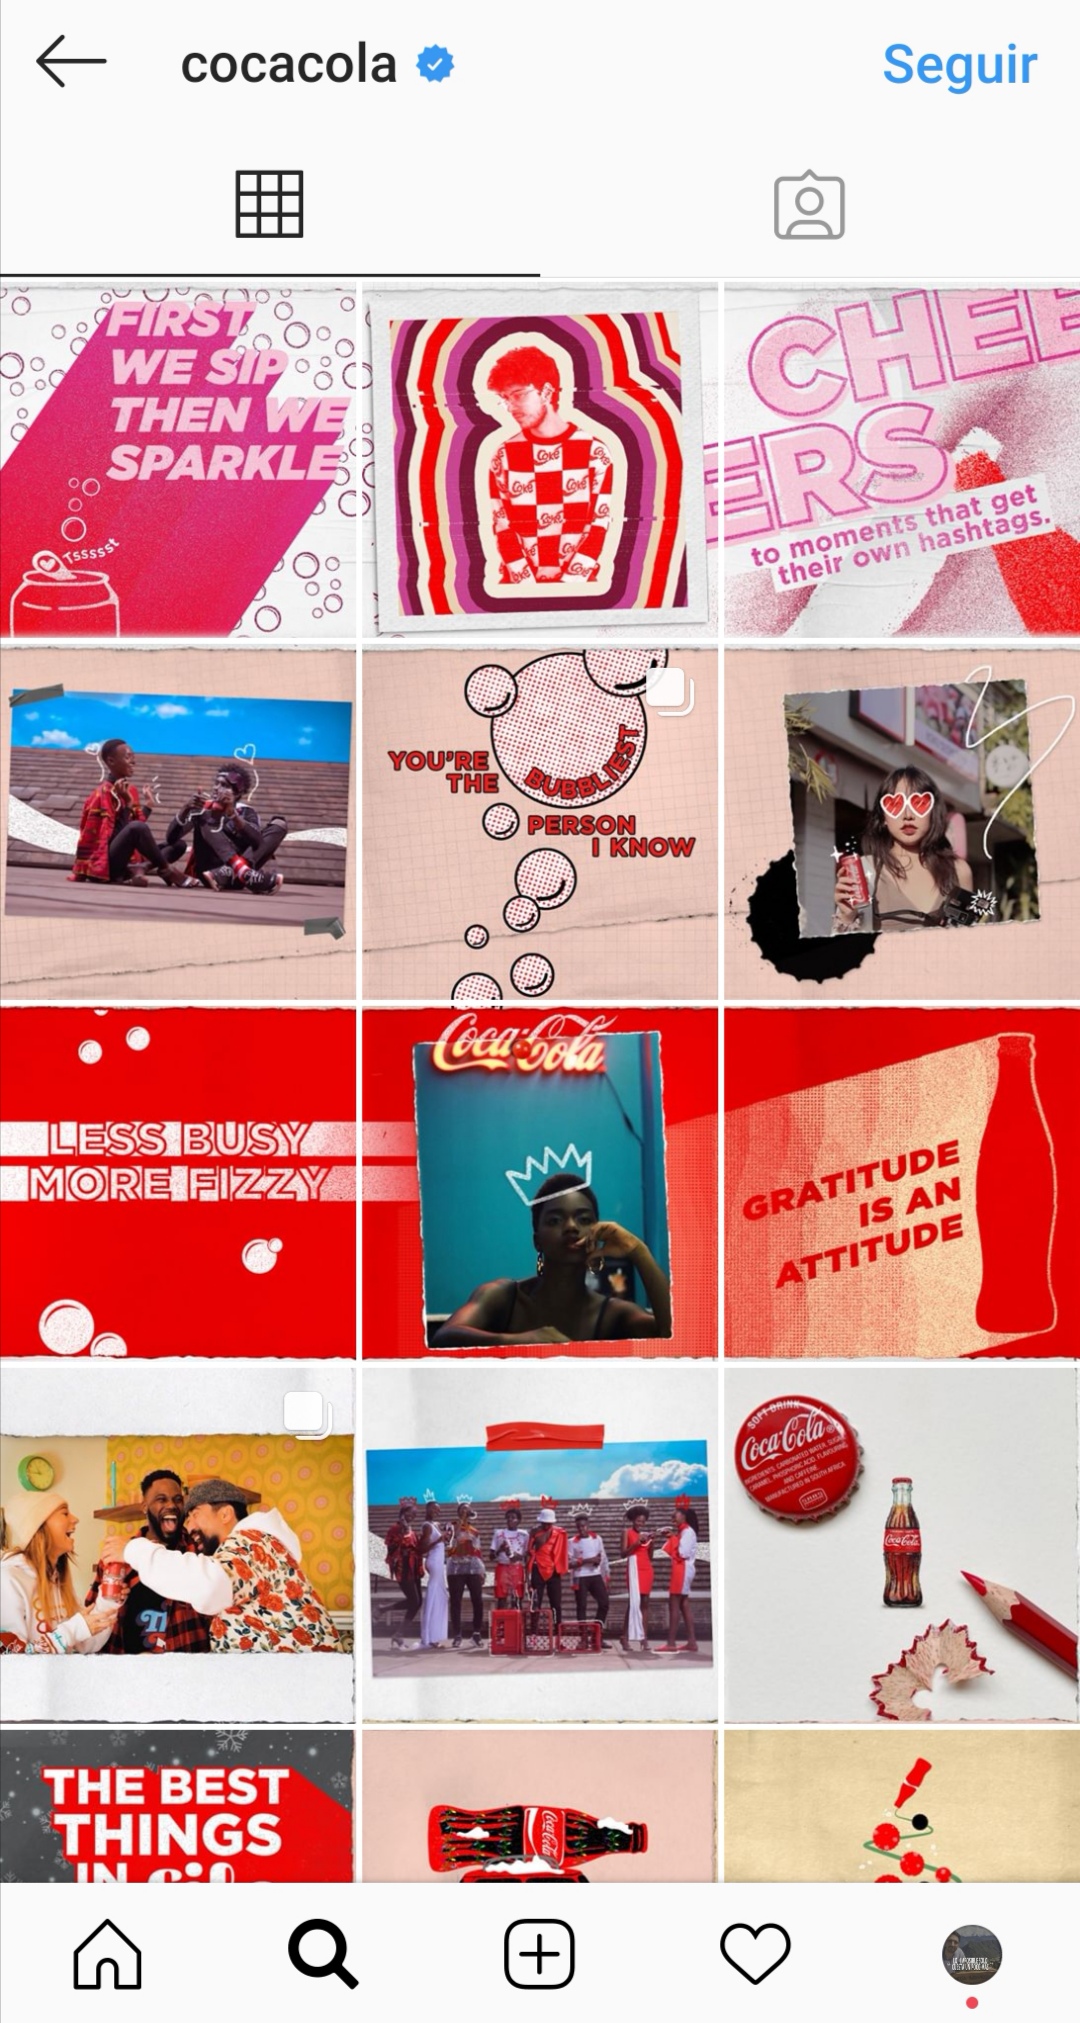 Tendencias de Instagram en 2020 - Perfil bonito como el de Cocacola